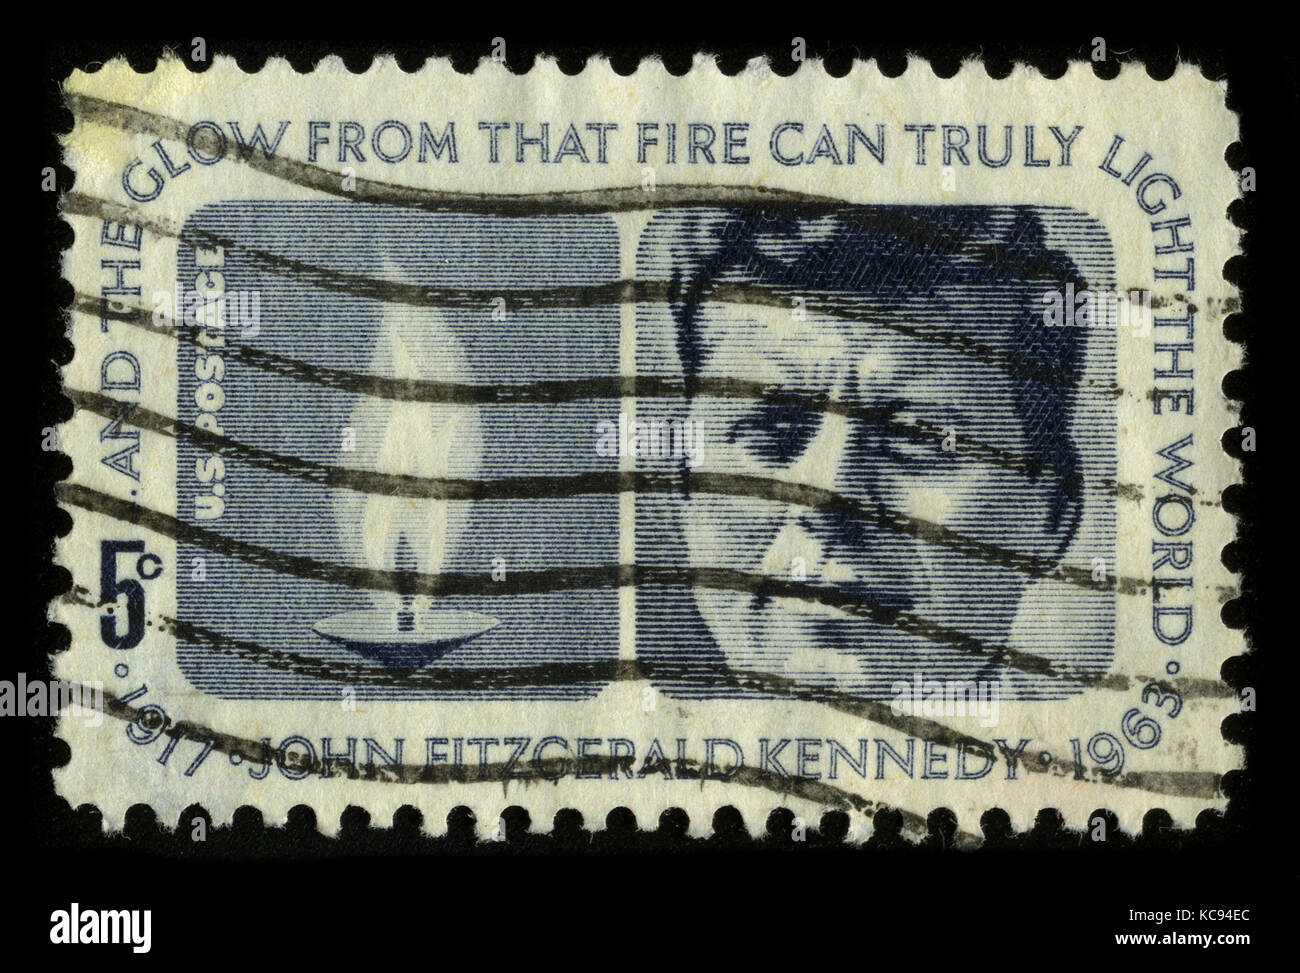 Usa - circa 1970: einen Stempel in den usa zeigt ein Bild Portrait John fitzgerald "Jack" Kennedy gedruckt (mai 29, 1917 - November 22, 1963), die oft durch Stockfoto